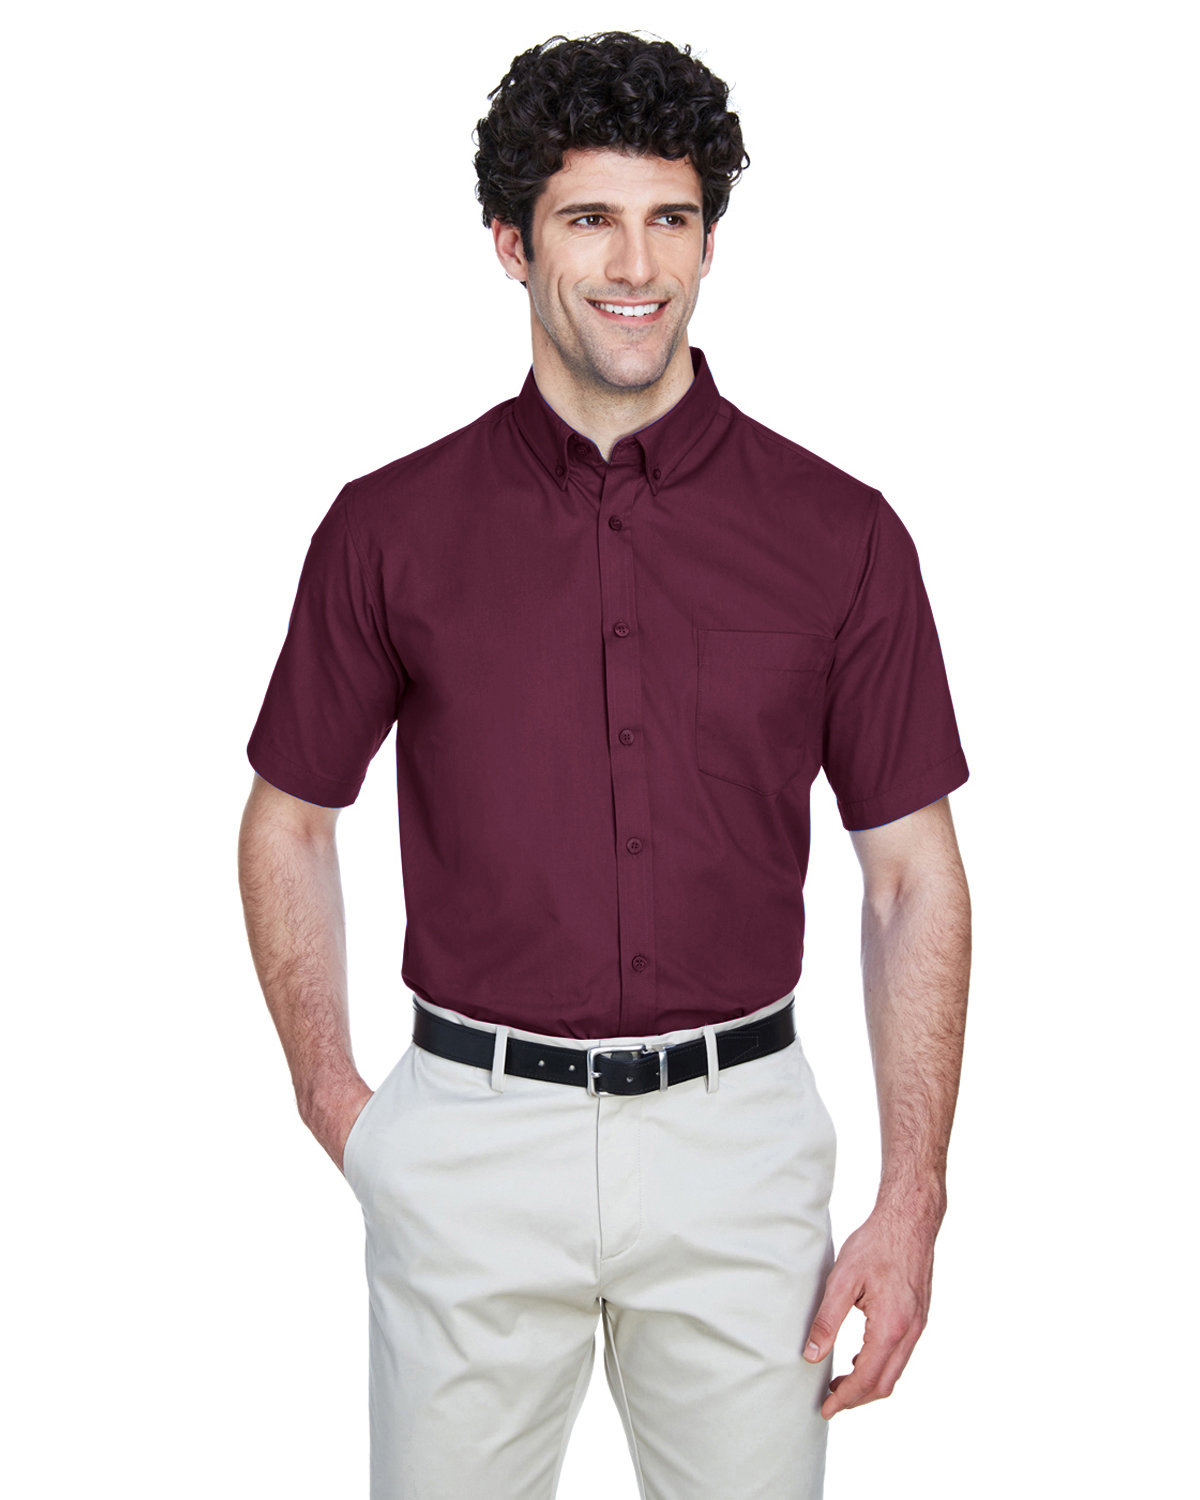 Core 365 Men's Optimum Short-Sleeve Twill Shirt BURGUNDY 